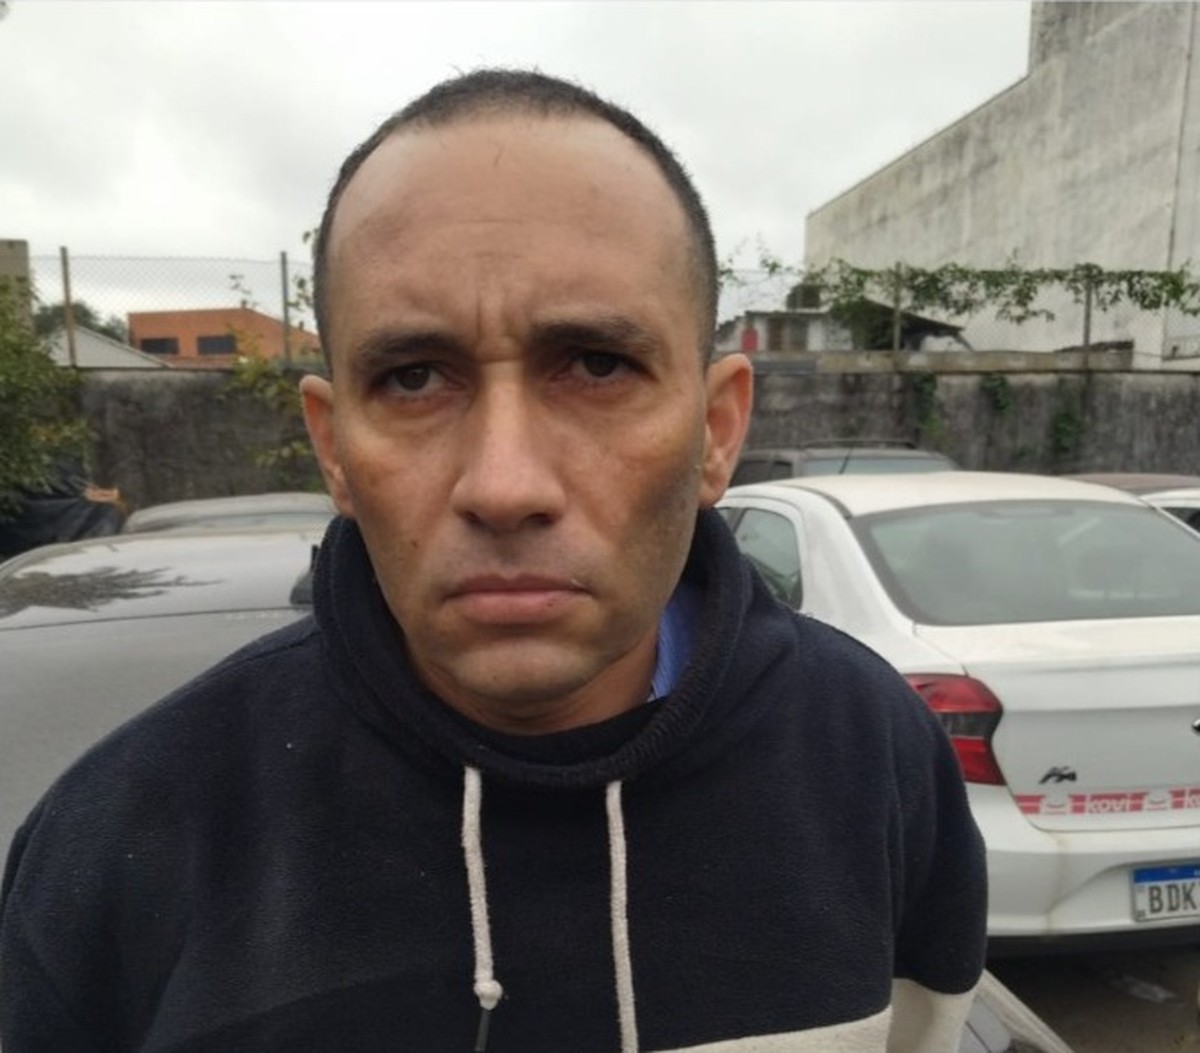 Chefe de facção criminosa da Bahia é transferido para prisão de segurança máxima no DF